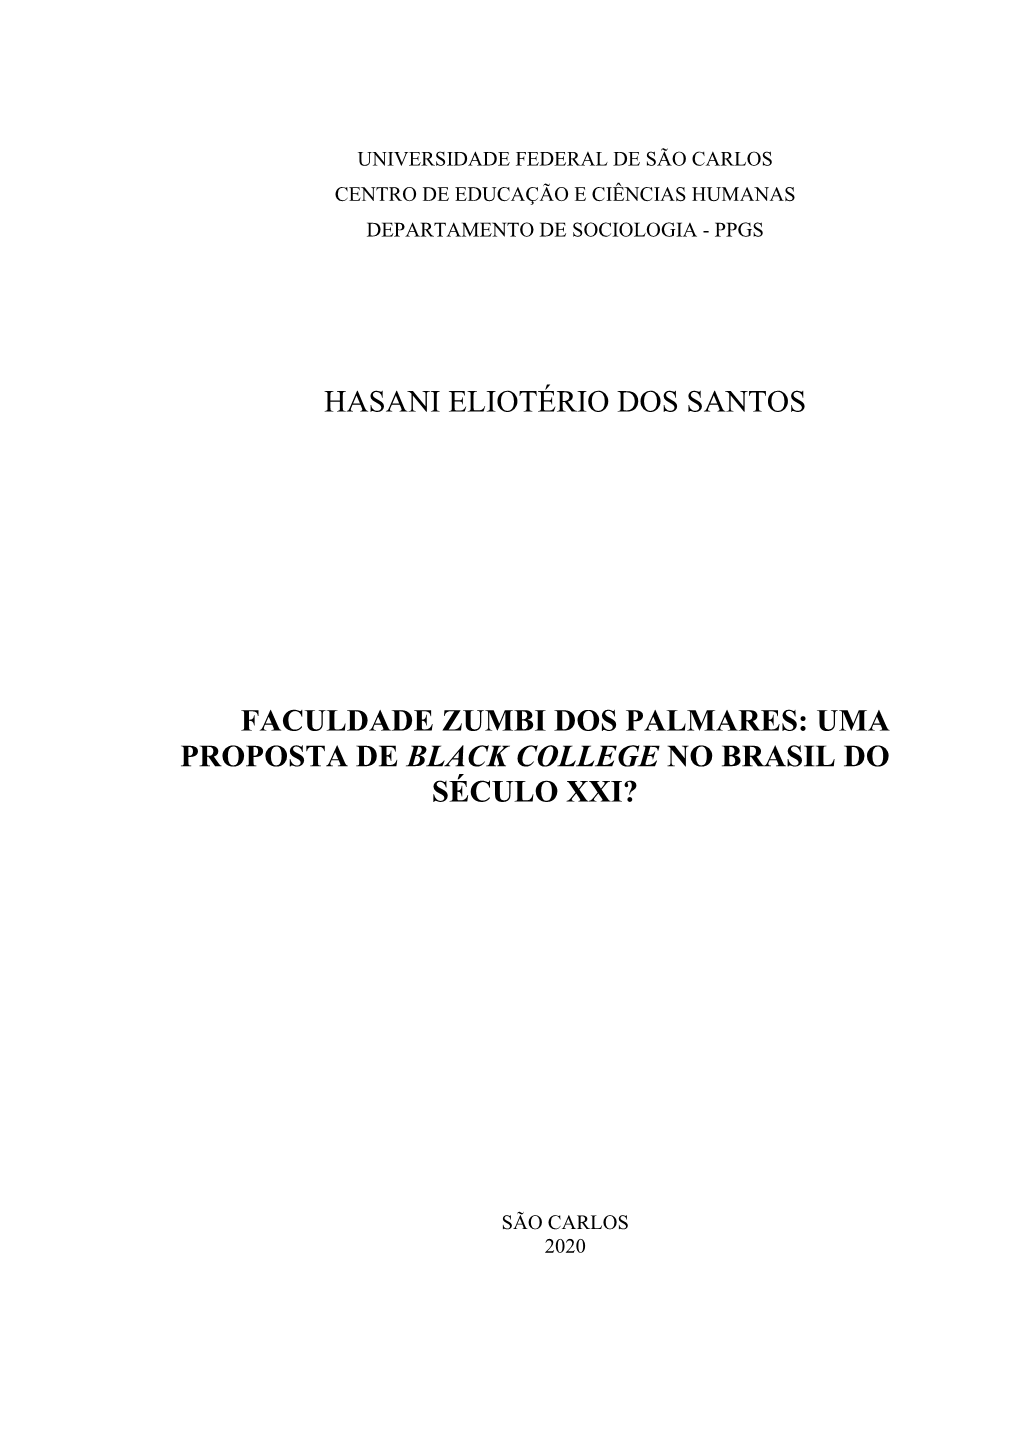 Hasani Eliotério Dos Santos Faculdade Zumbi Dos Palmares